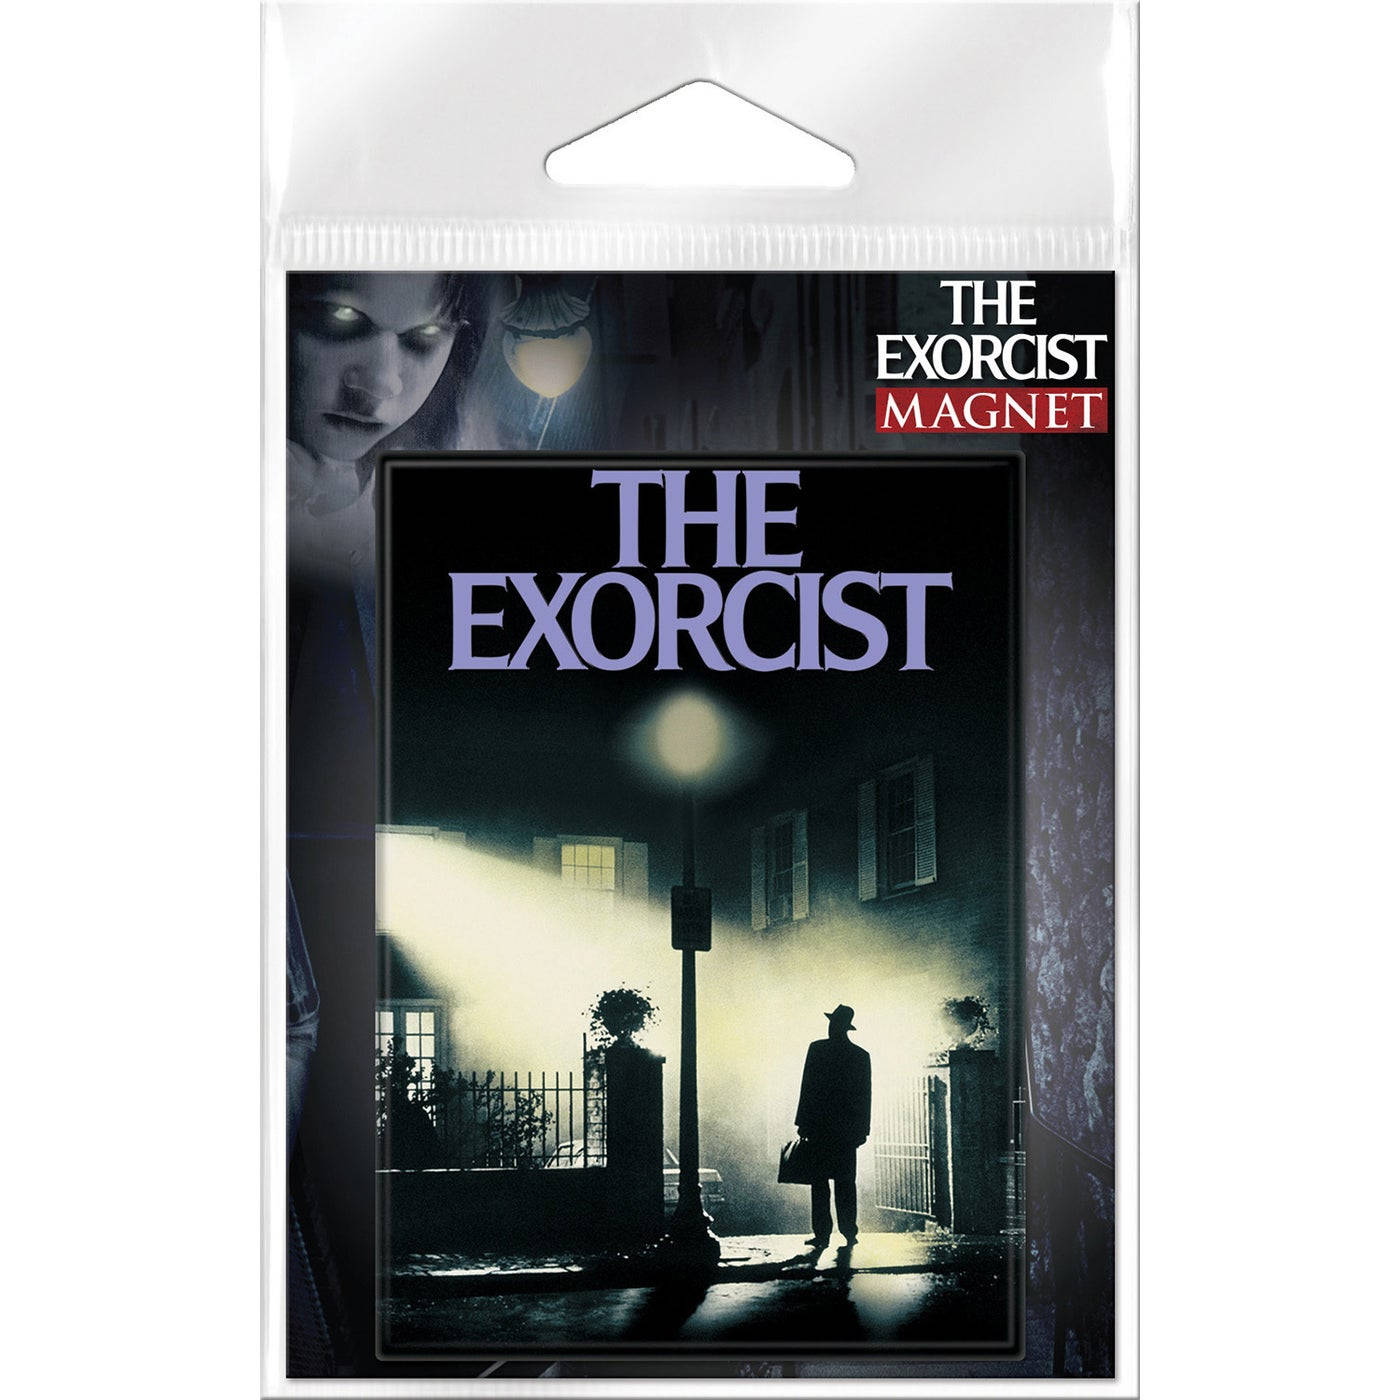 The Exorcist Magnet Poster Wallpaper